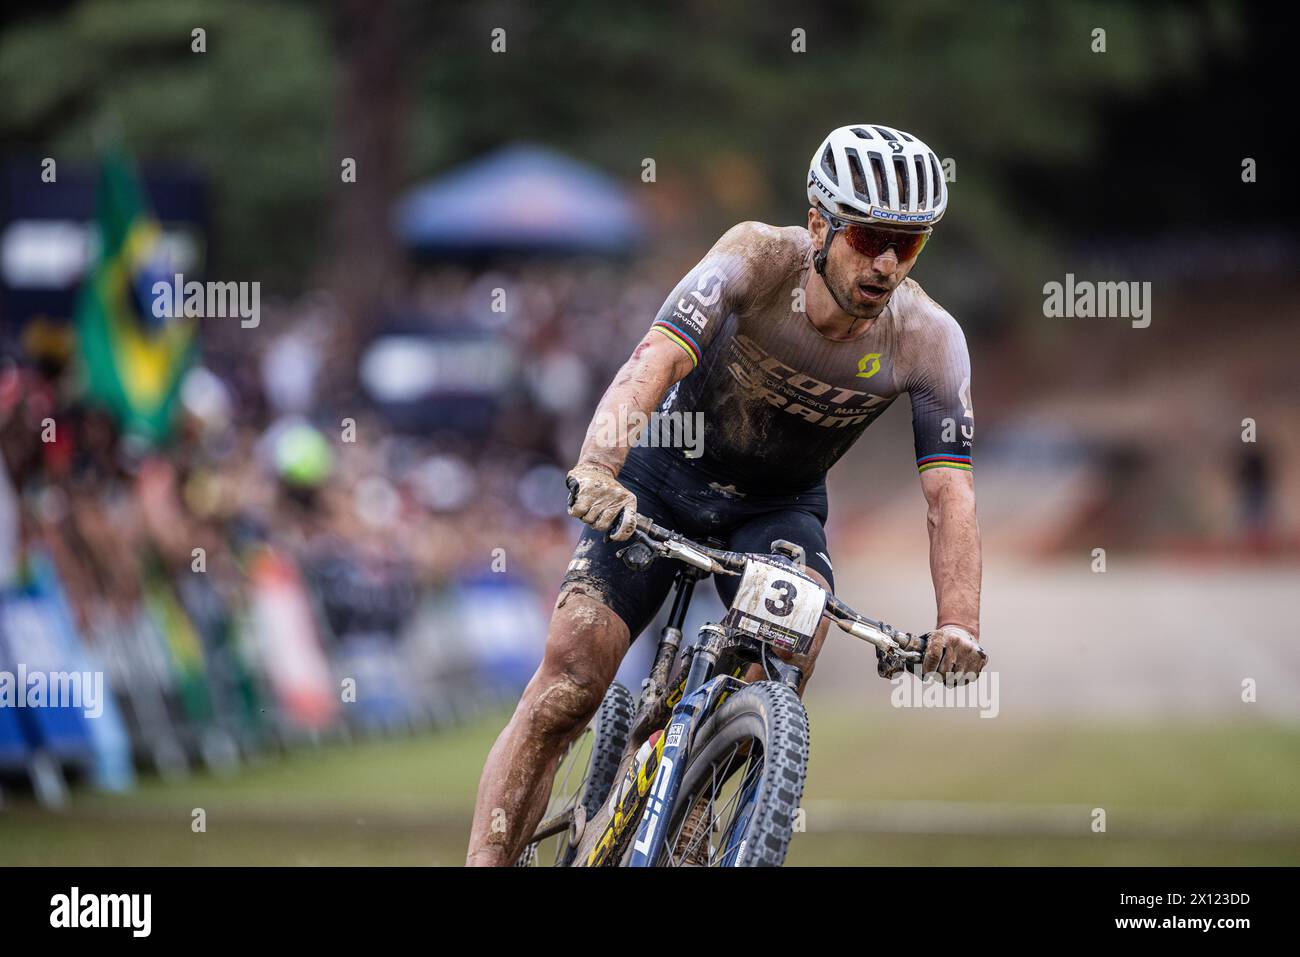 Nino Schurter aus der Schweiz in Aktion beim Rennen des UCI Mountain Bike World Cup Cross-Country, das dieses Wochenende in der Stadt stattfindet Stockfoto